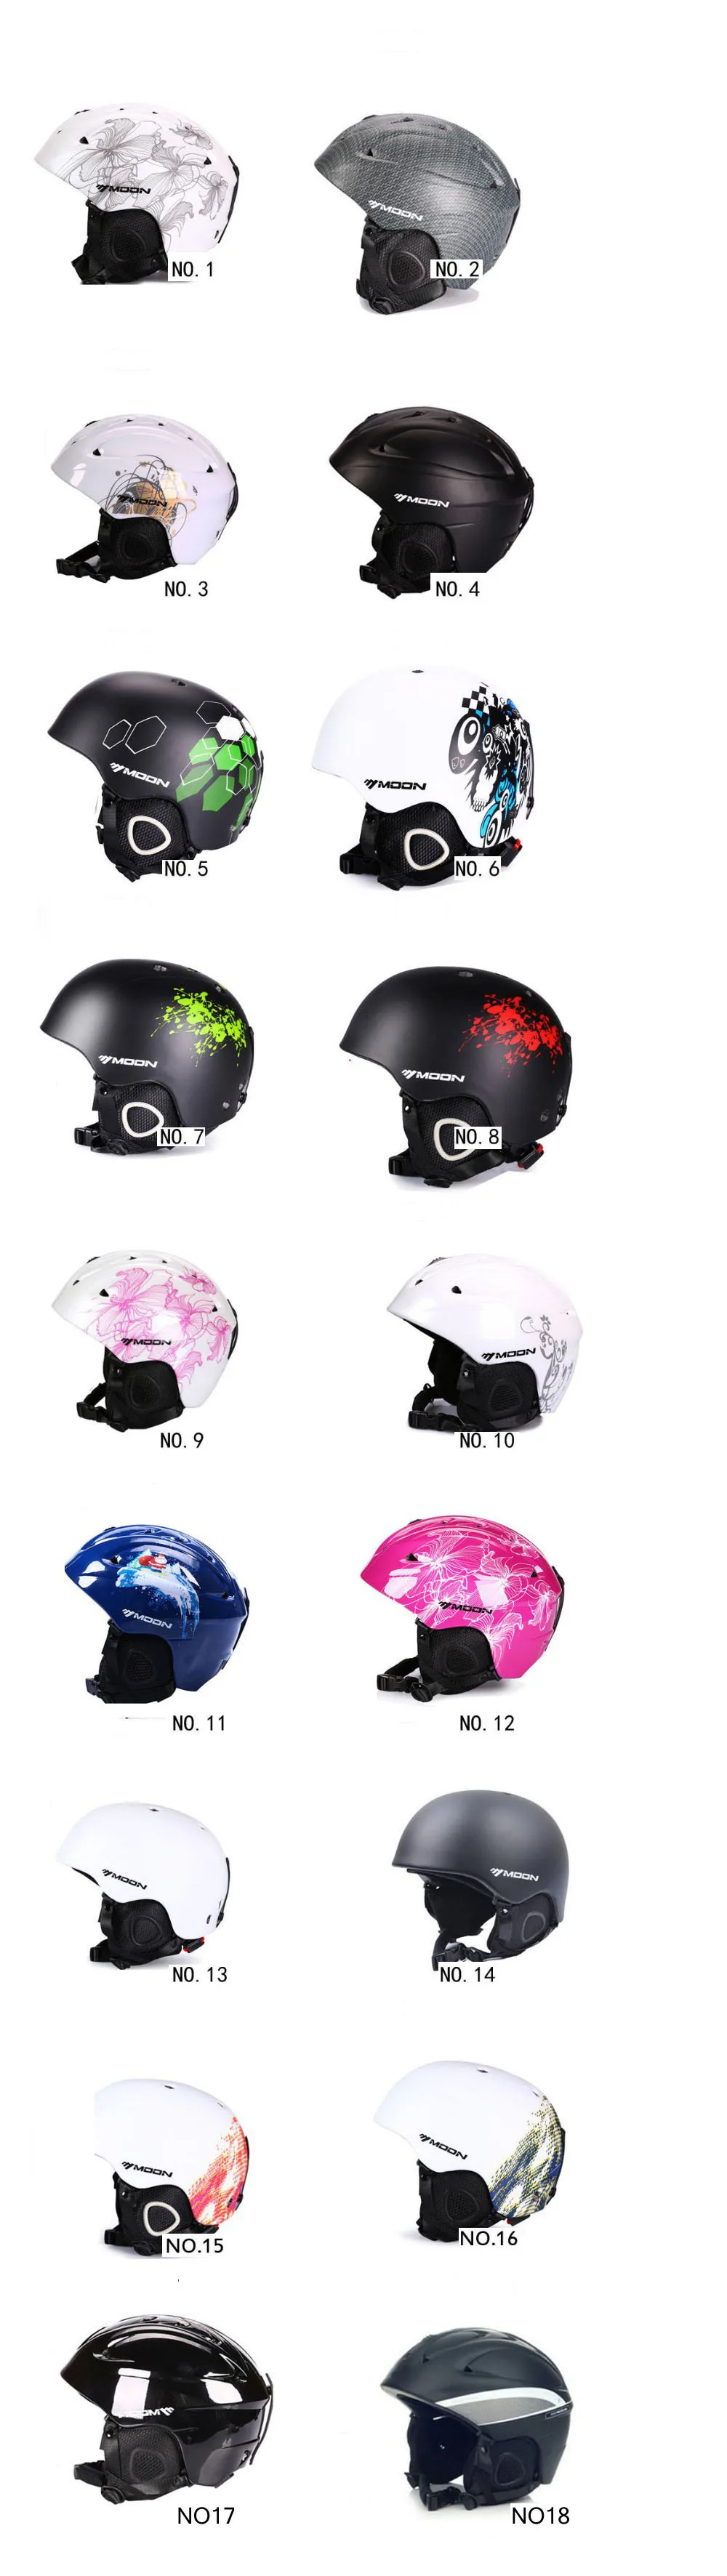 Дешевые Продажи бренд скейтборд лыжный сноуборд шлем интегрально-Формованный Сверхлегкий дышащий MOON лыжный шлем CE сертификация